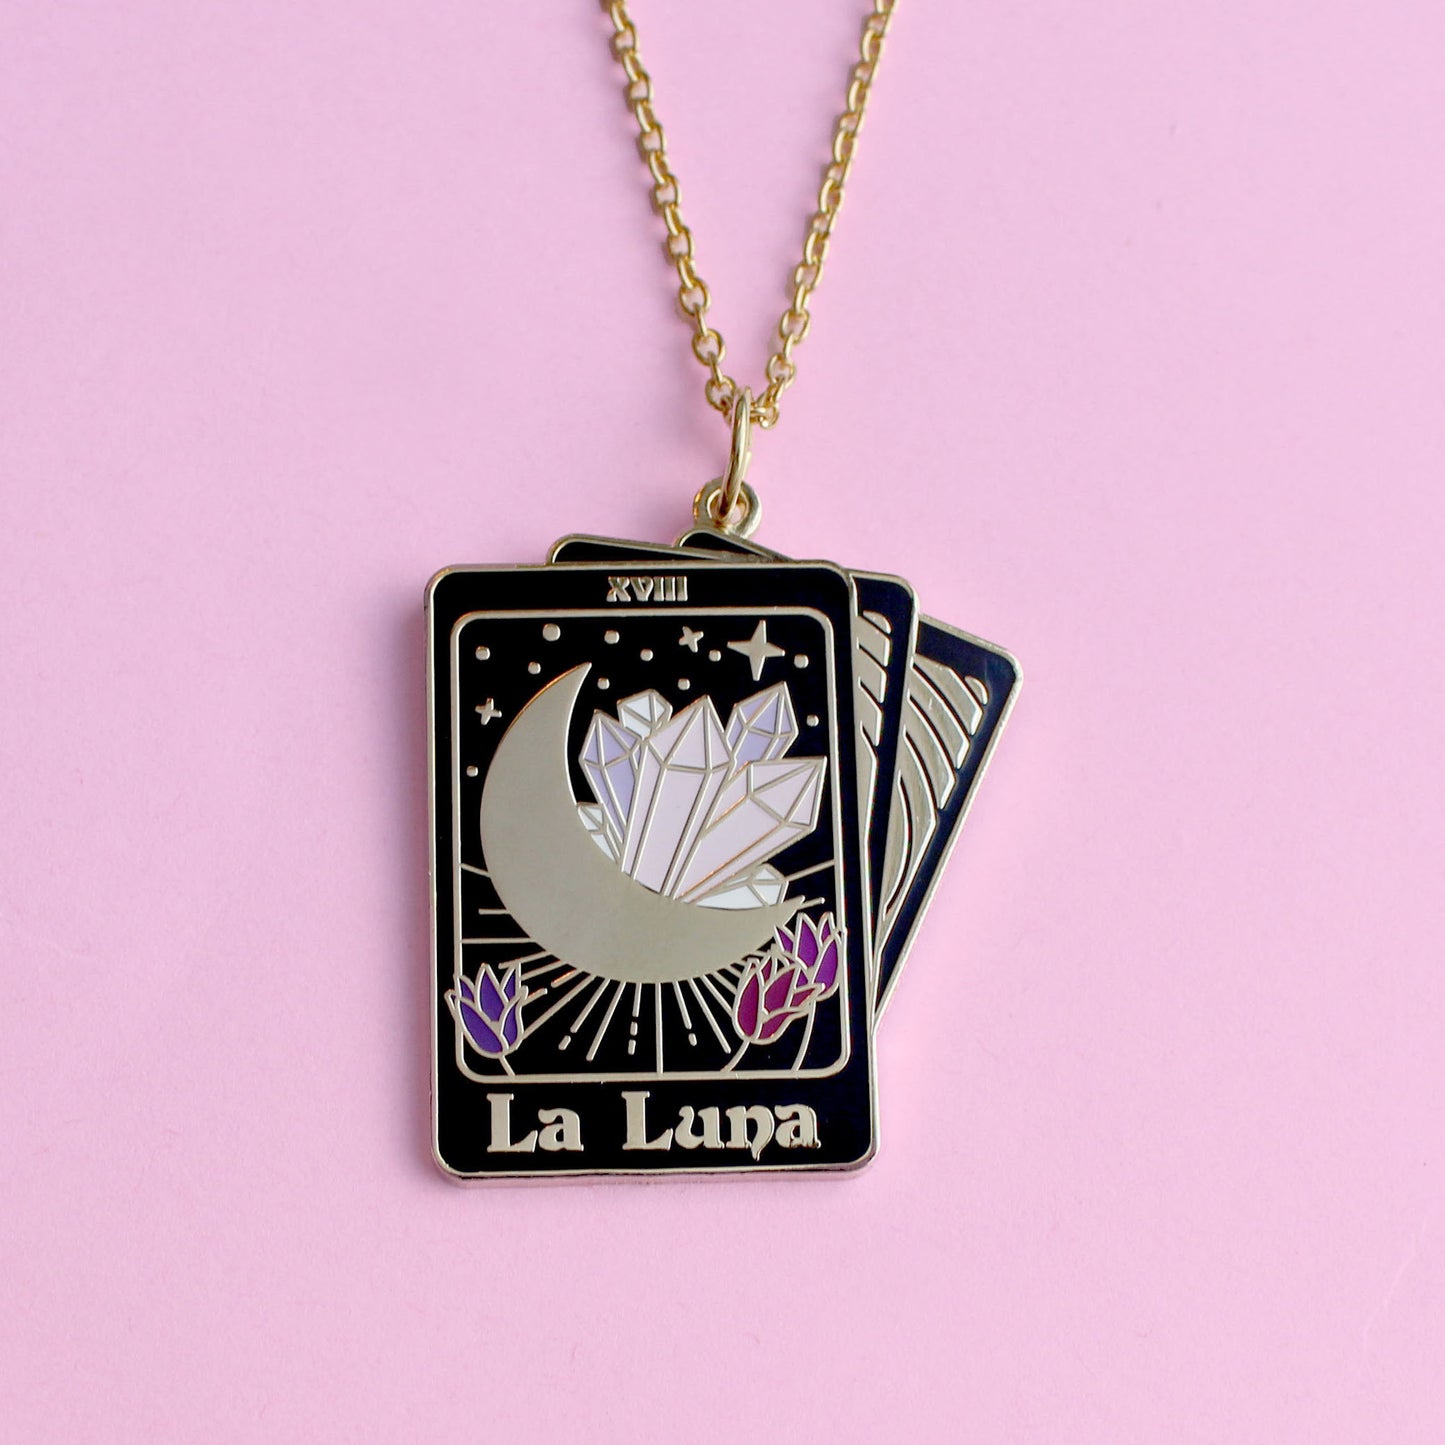 La Luna tarot card necklace